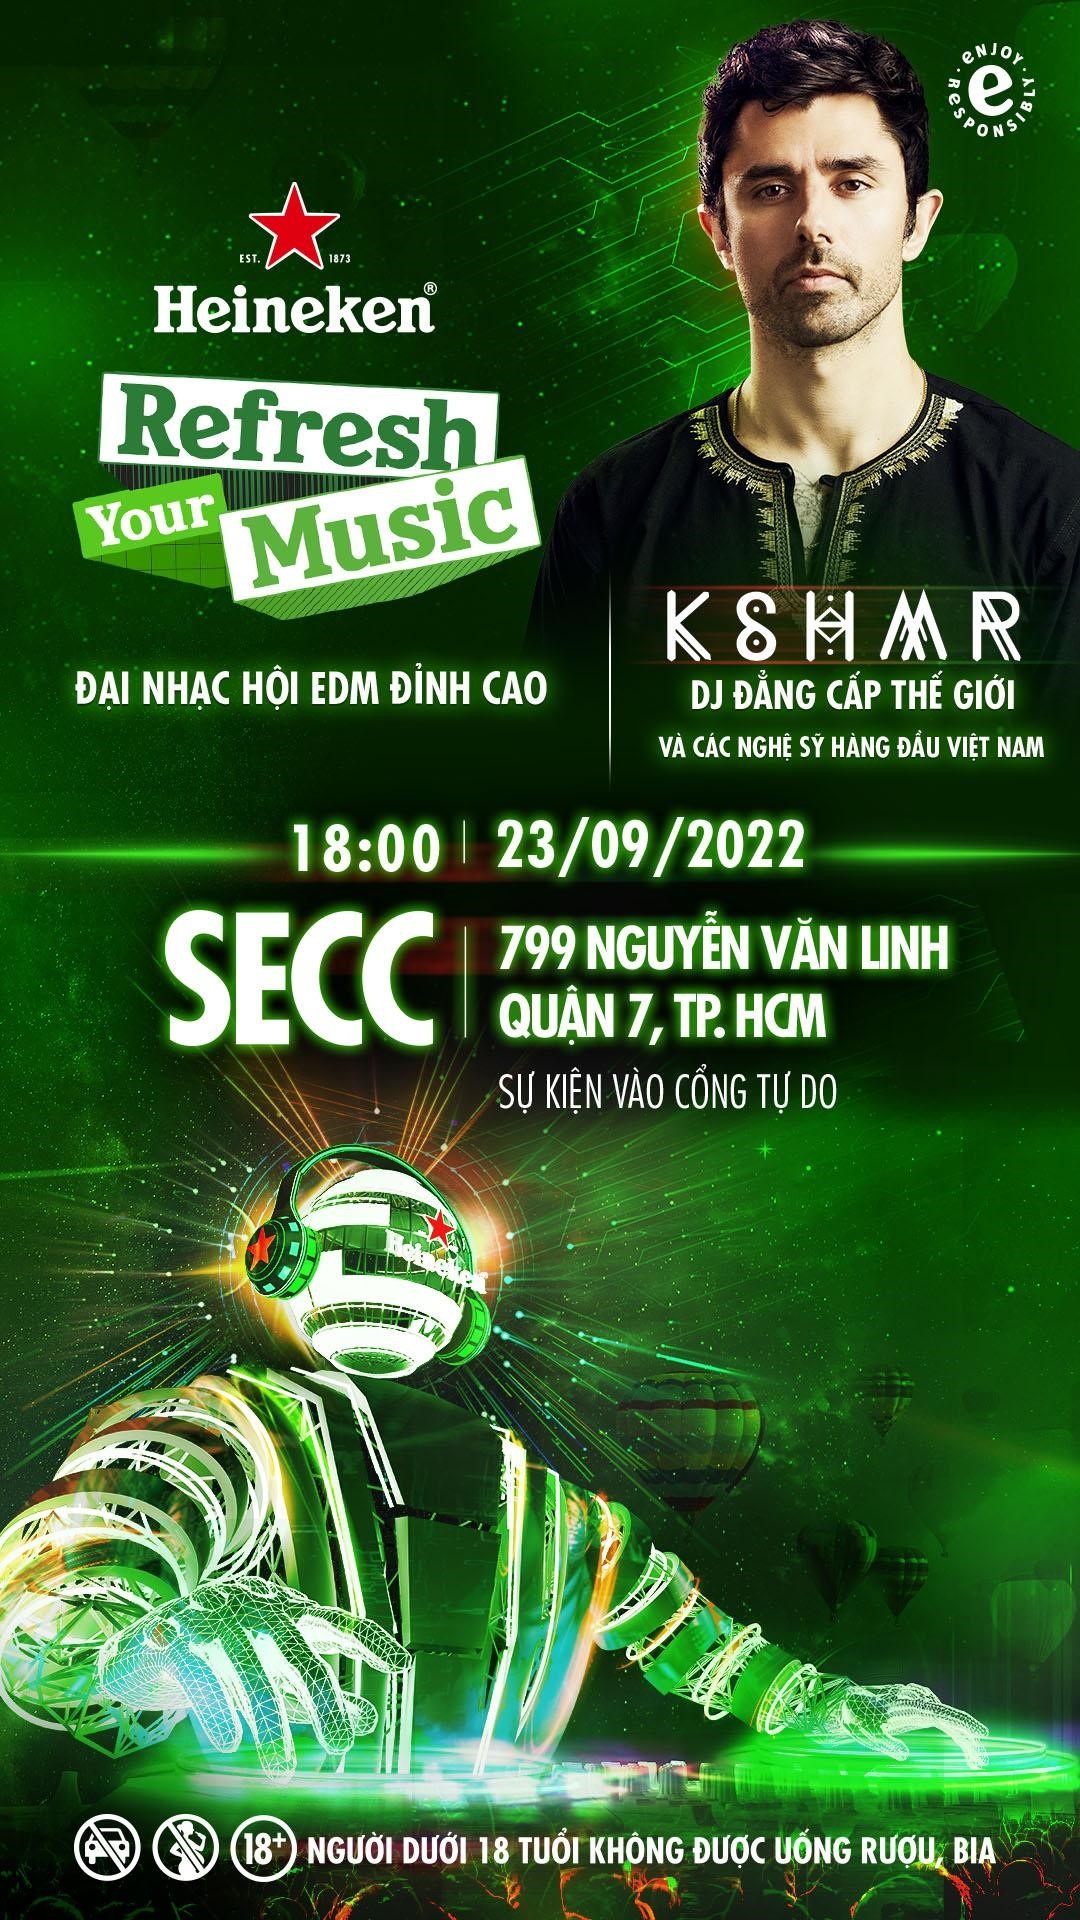 DJ KSHMR cùng dàn sao Việt quy tụ tại Heineken Refresh Your Music-6